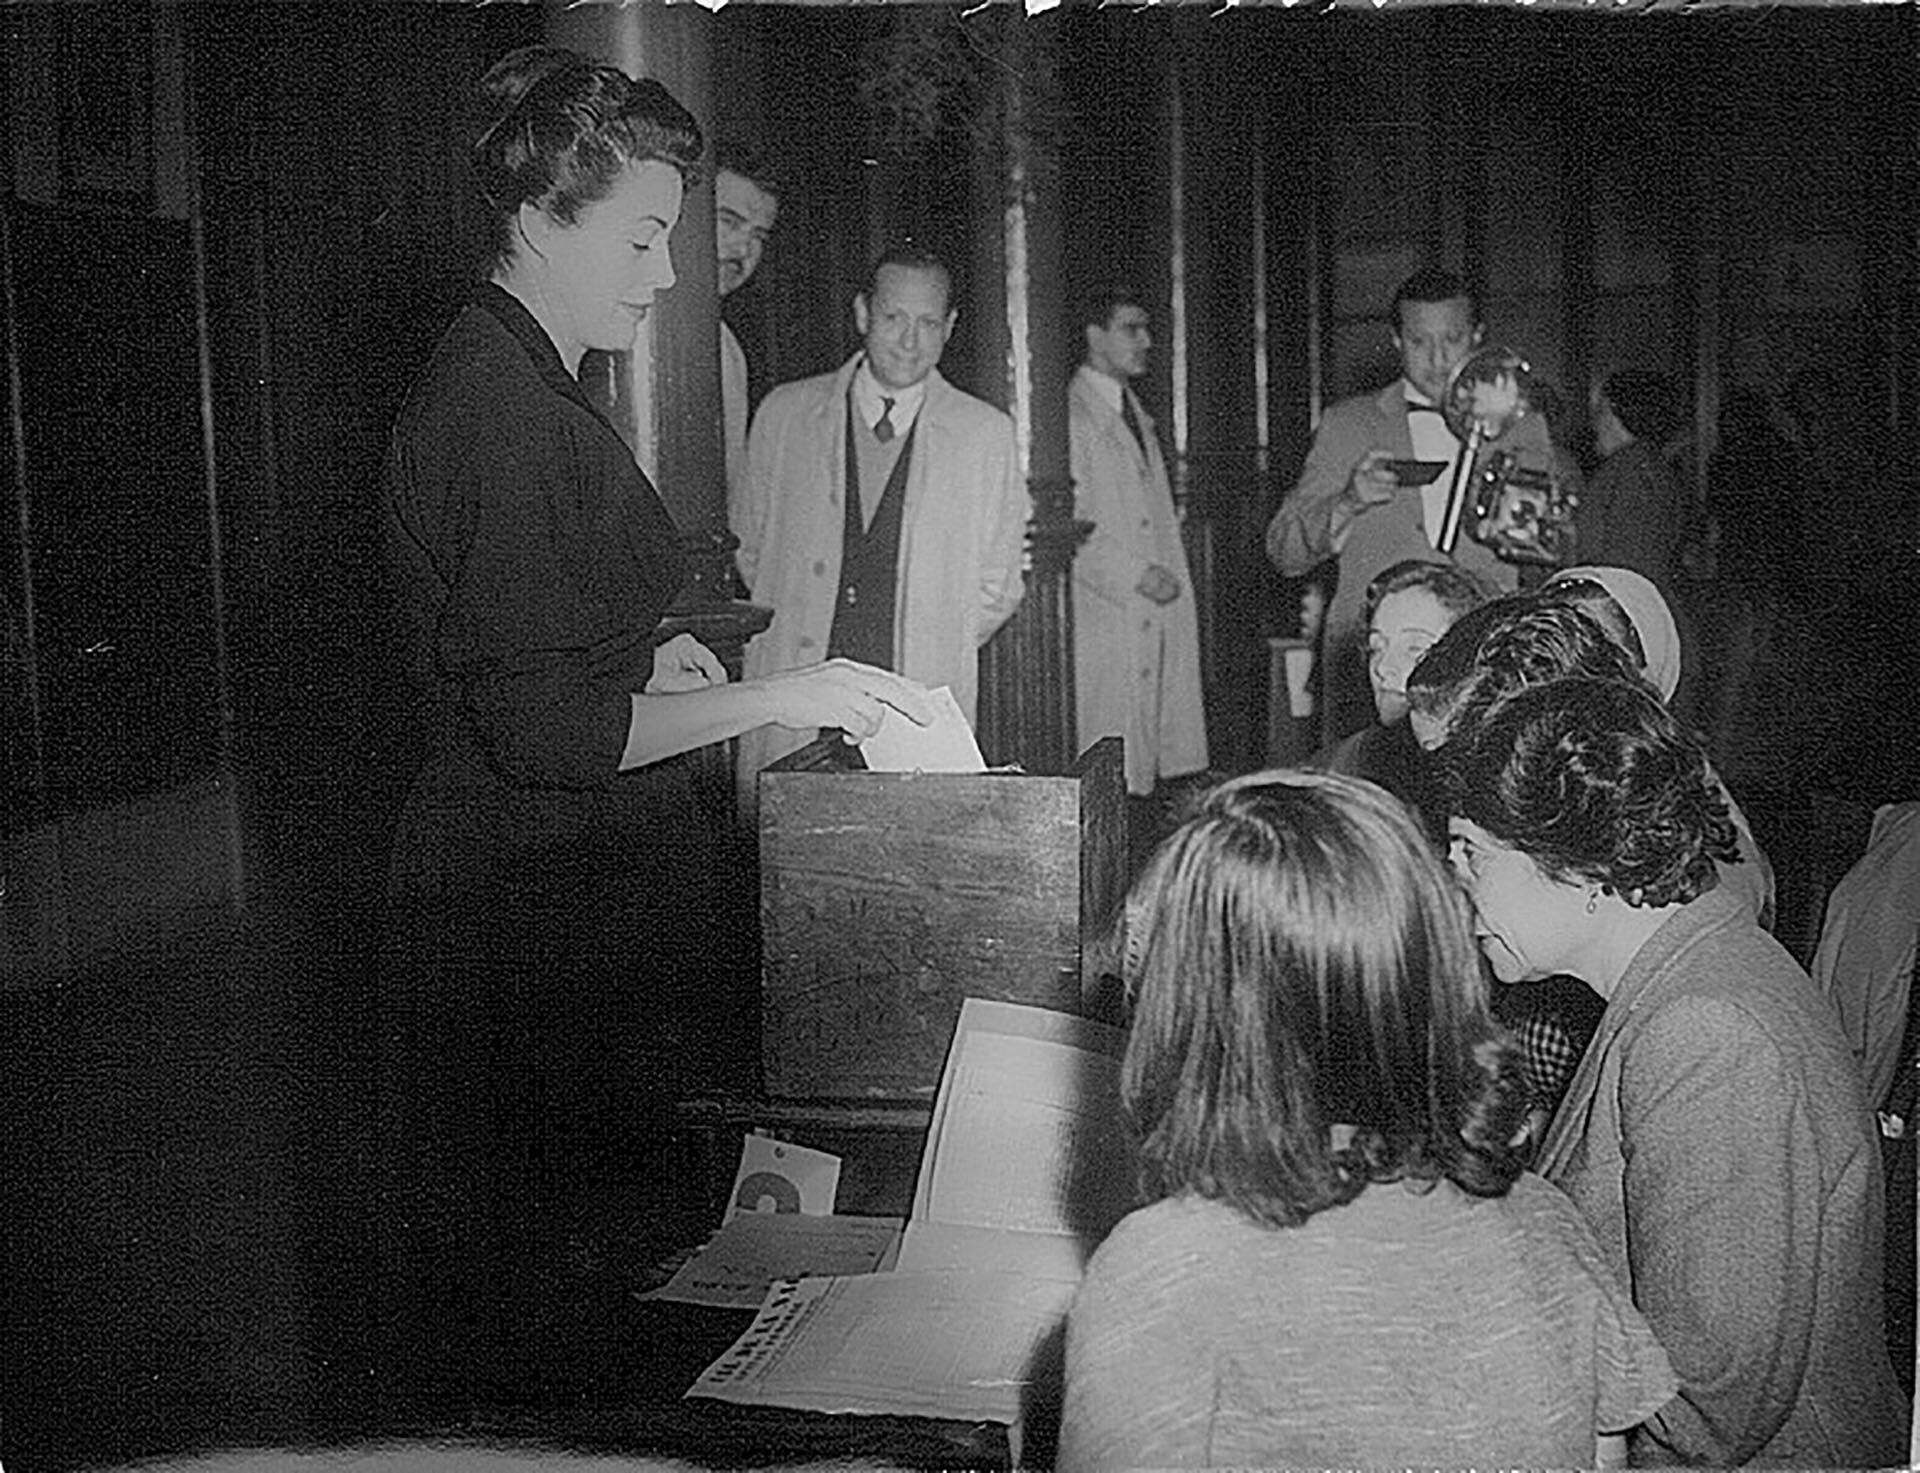 Partido peronista femenino- eva peron - elecciones 1951 y legisladoras